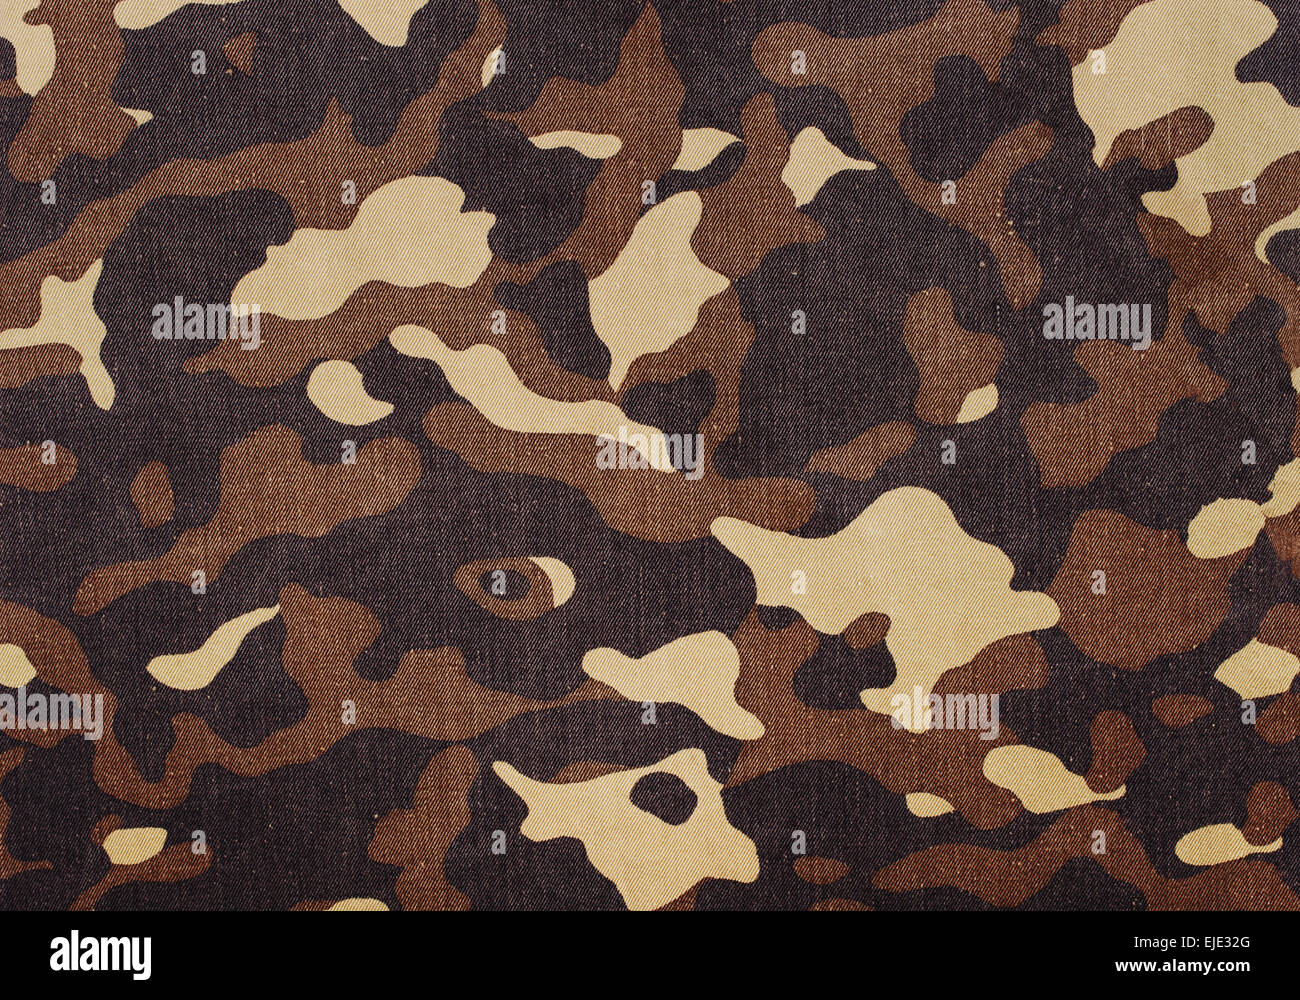 La texture de fond de camouflage militaire Banque D'Images